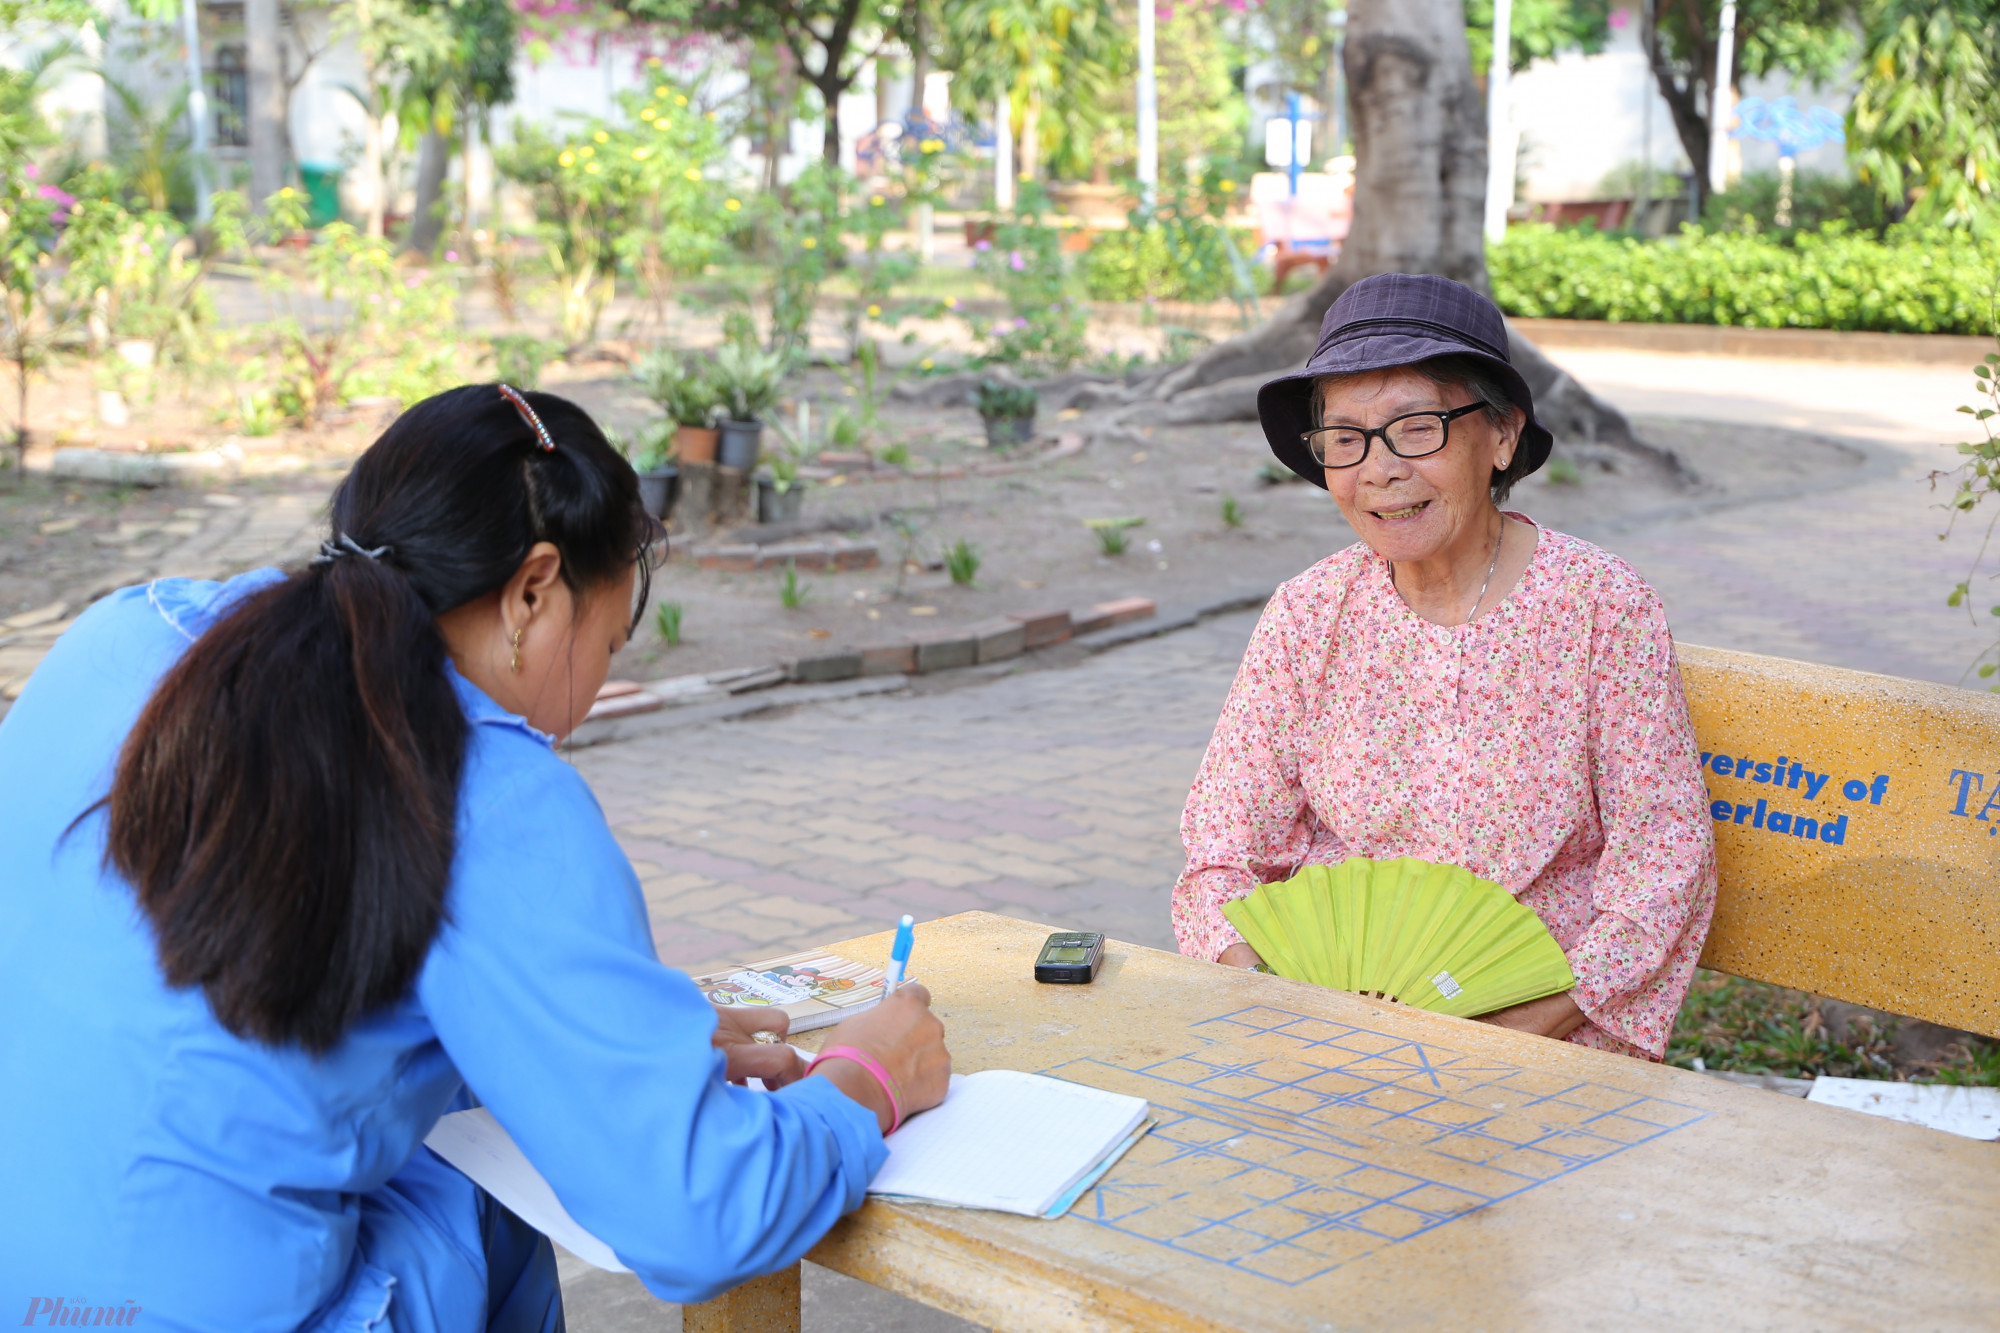 Cụ Nguyễn Thị Thanh đăng ký thực đơn ăn uống dịp Tết với nhân viên Viện dưỡng lão. Cụ vừa trải qua đợt bệnh dài nên khu vườn do cụ chăm sóc cũng dần trơ gốc, chết dần.